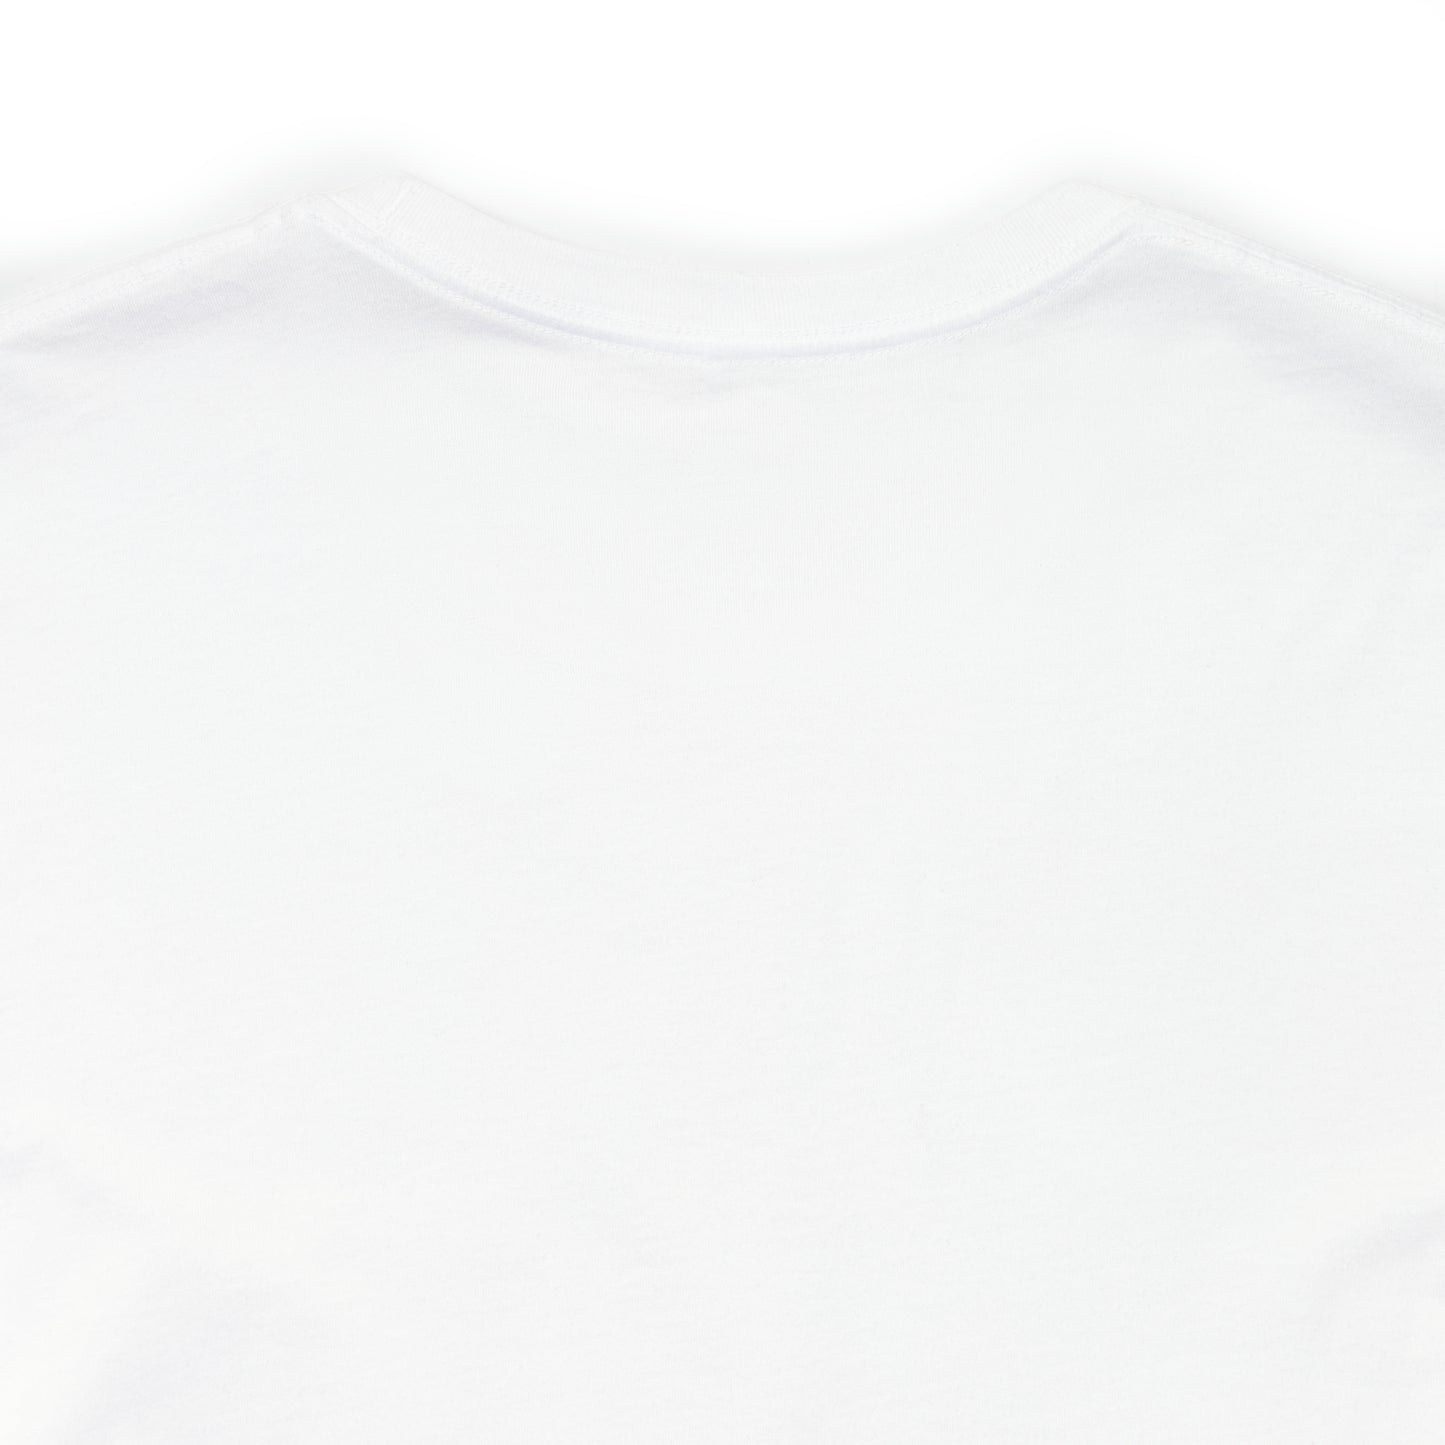 Chill Vibes - Wolf in Yellow Pop Art T-Shirt - White Premium T-shirt